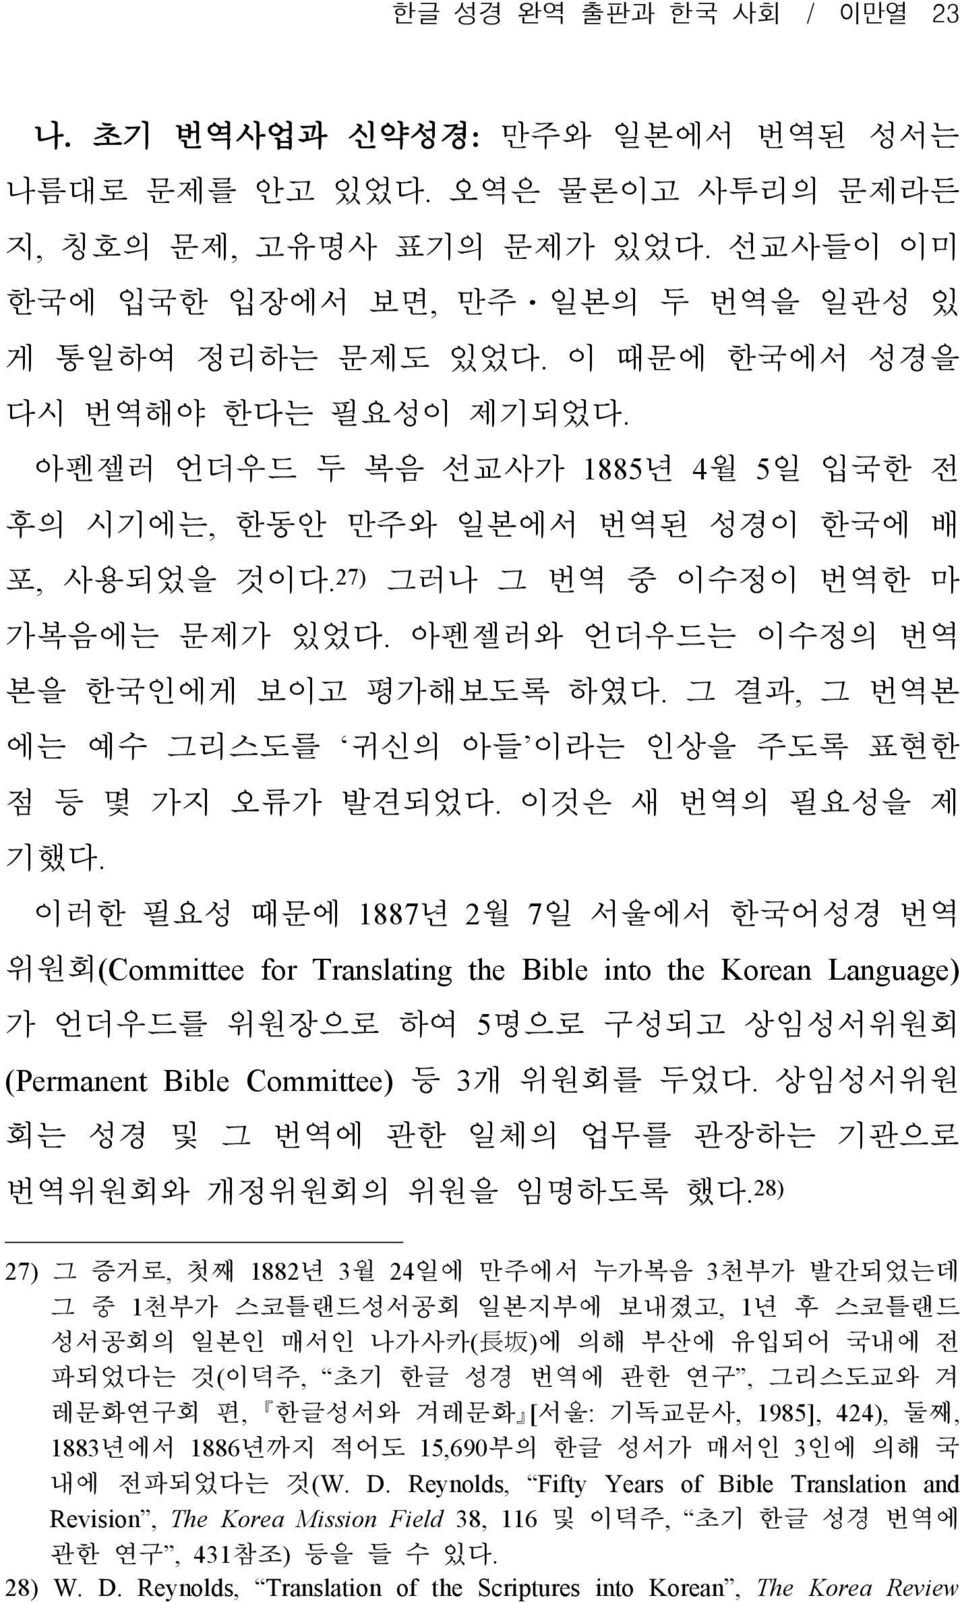 아펜젤러와 언더우드는 이수정의 번역 본을 한국인에게 보이고 평가해보도록 하였다. 그 결과, 그 번역본 에는 예수 그리스도를 귀신의 아들 이라는 인상을 주도록 표현한 점 등 몇 가지 오류가 발견되었다. 이것은 새 번역의 필요성을 제 기했다.